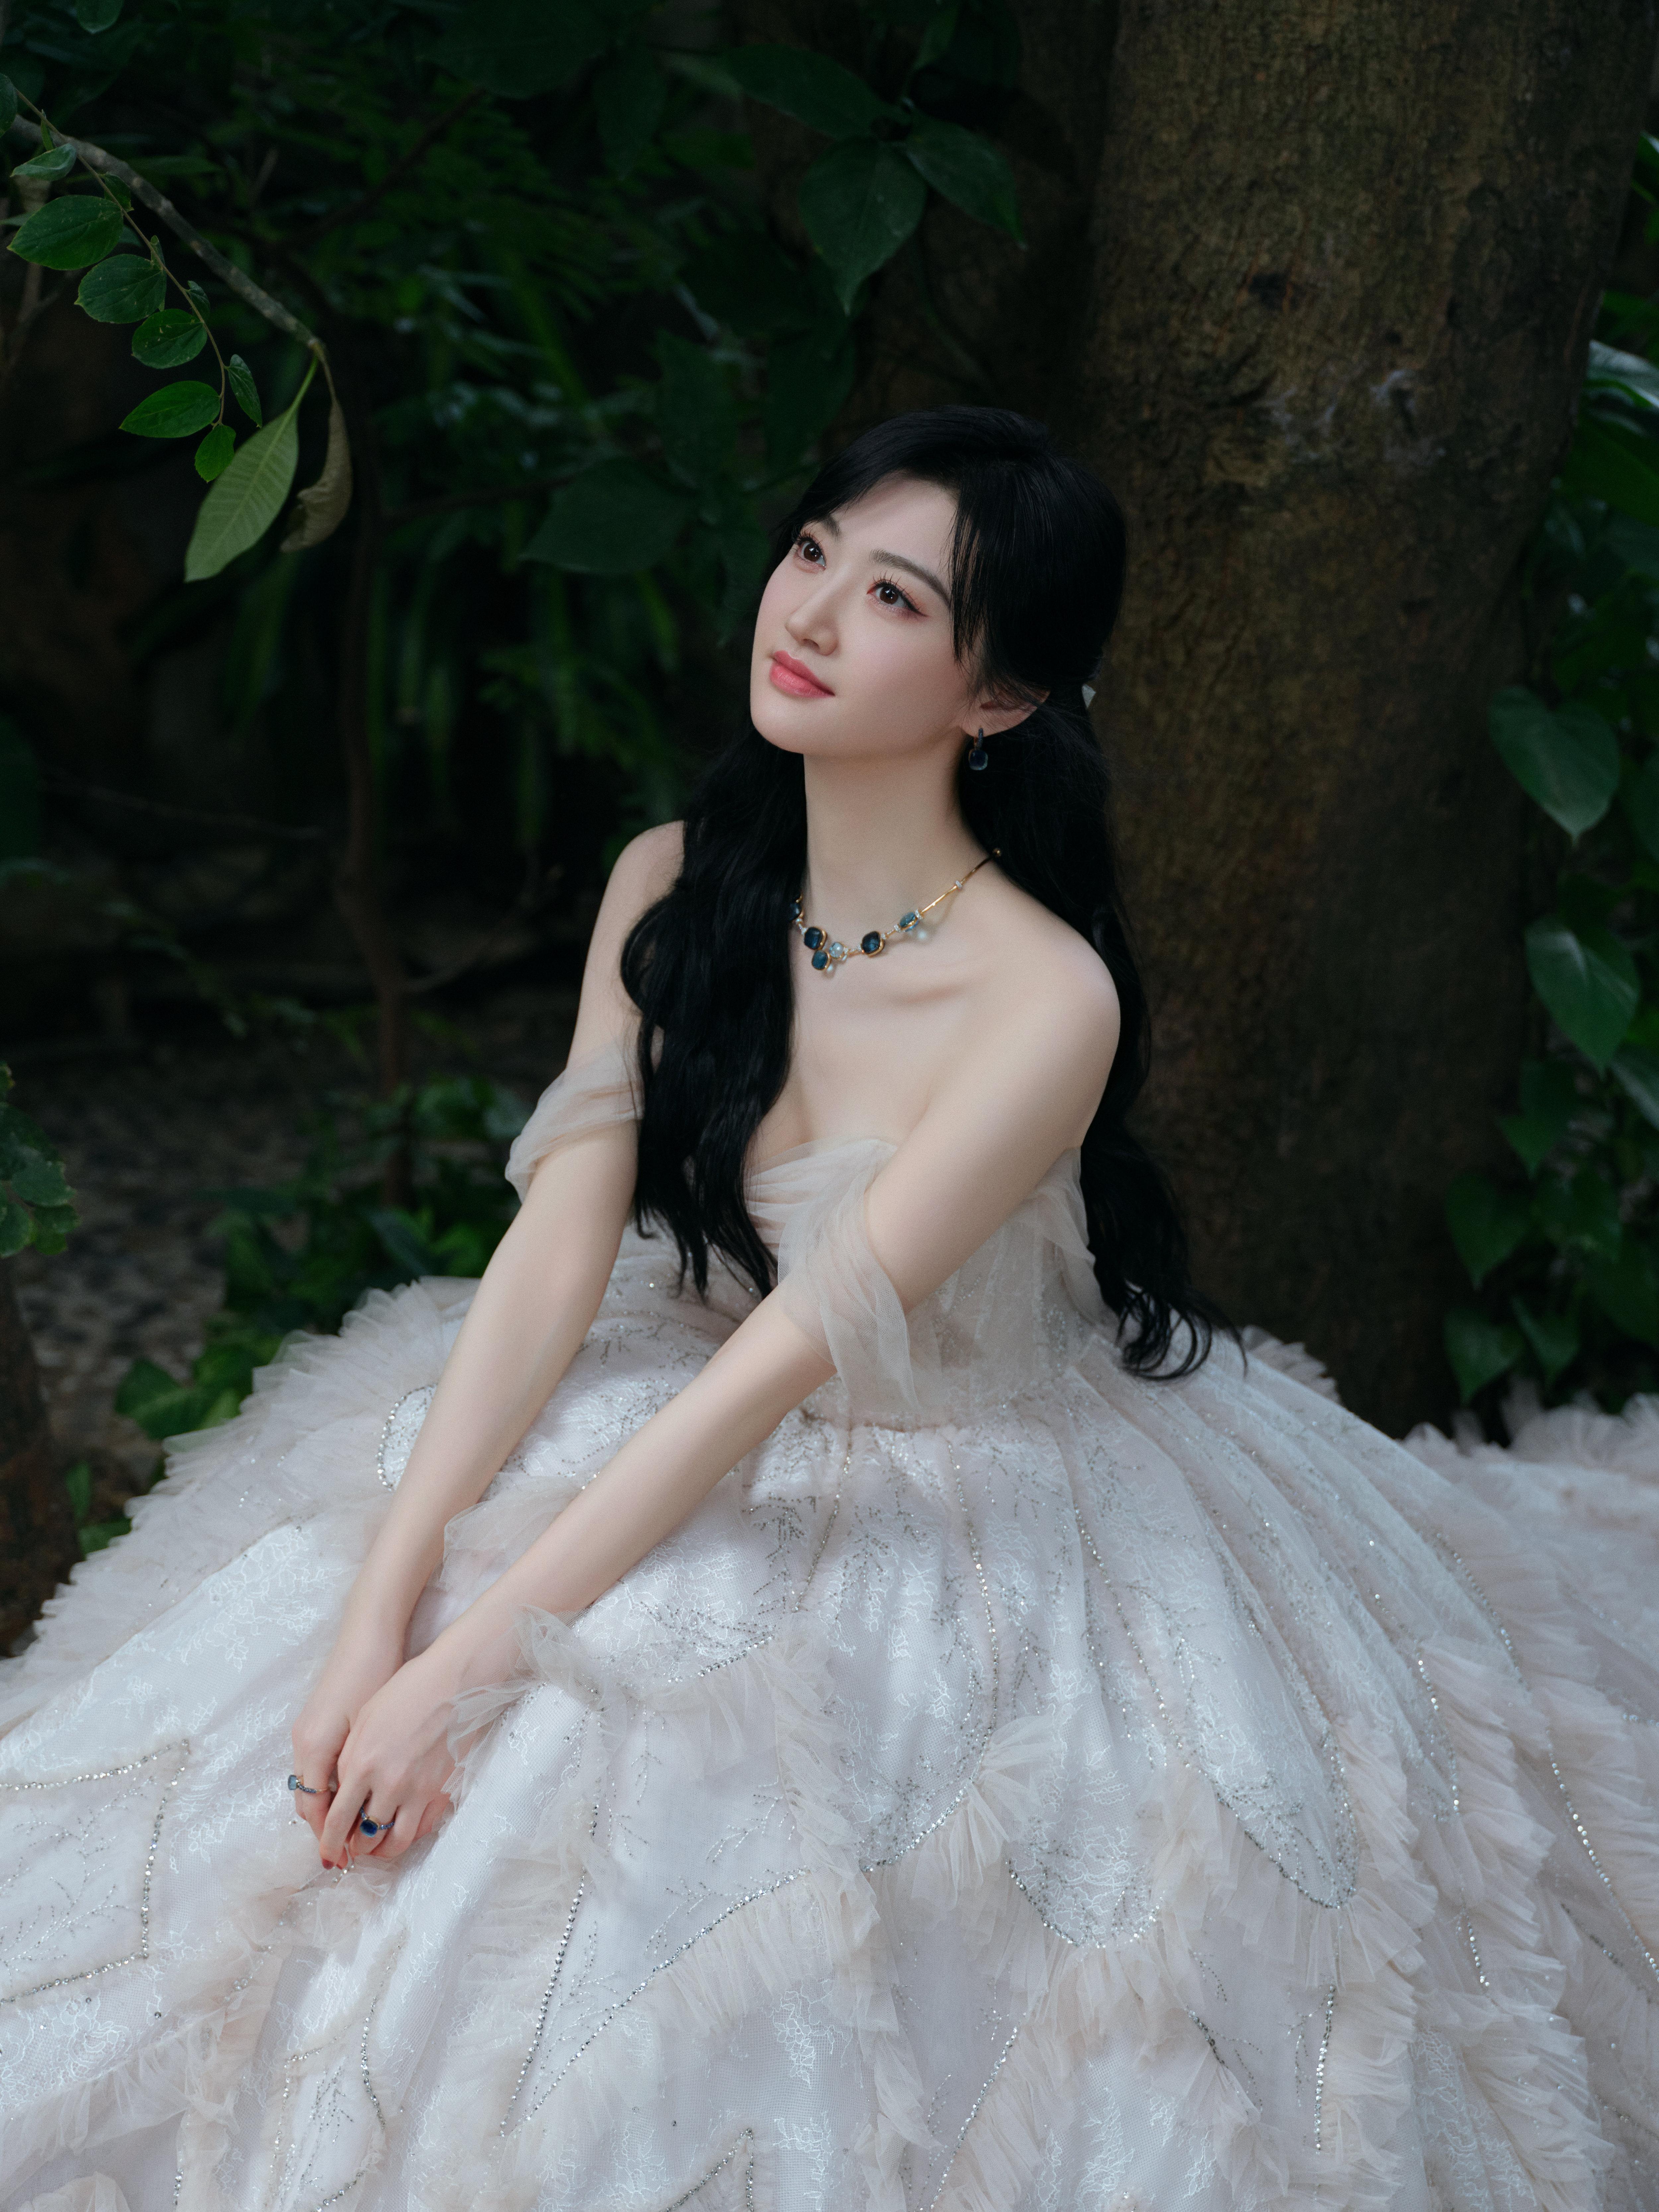 甜美公主范 景甜穿白色蓬蓬裙清新怡人,2 (2)